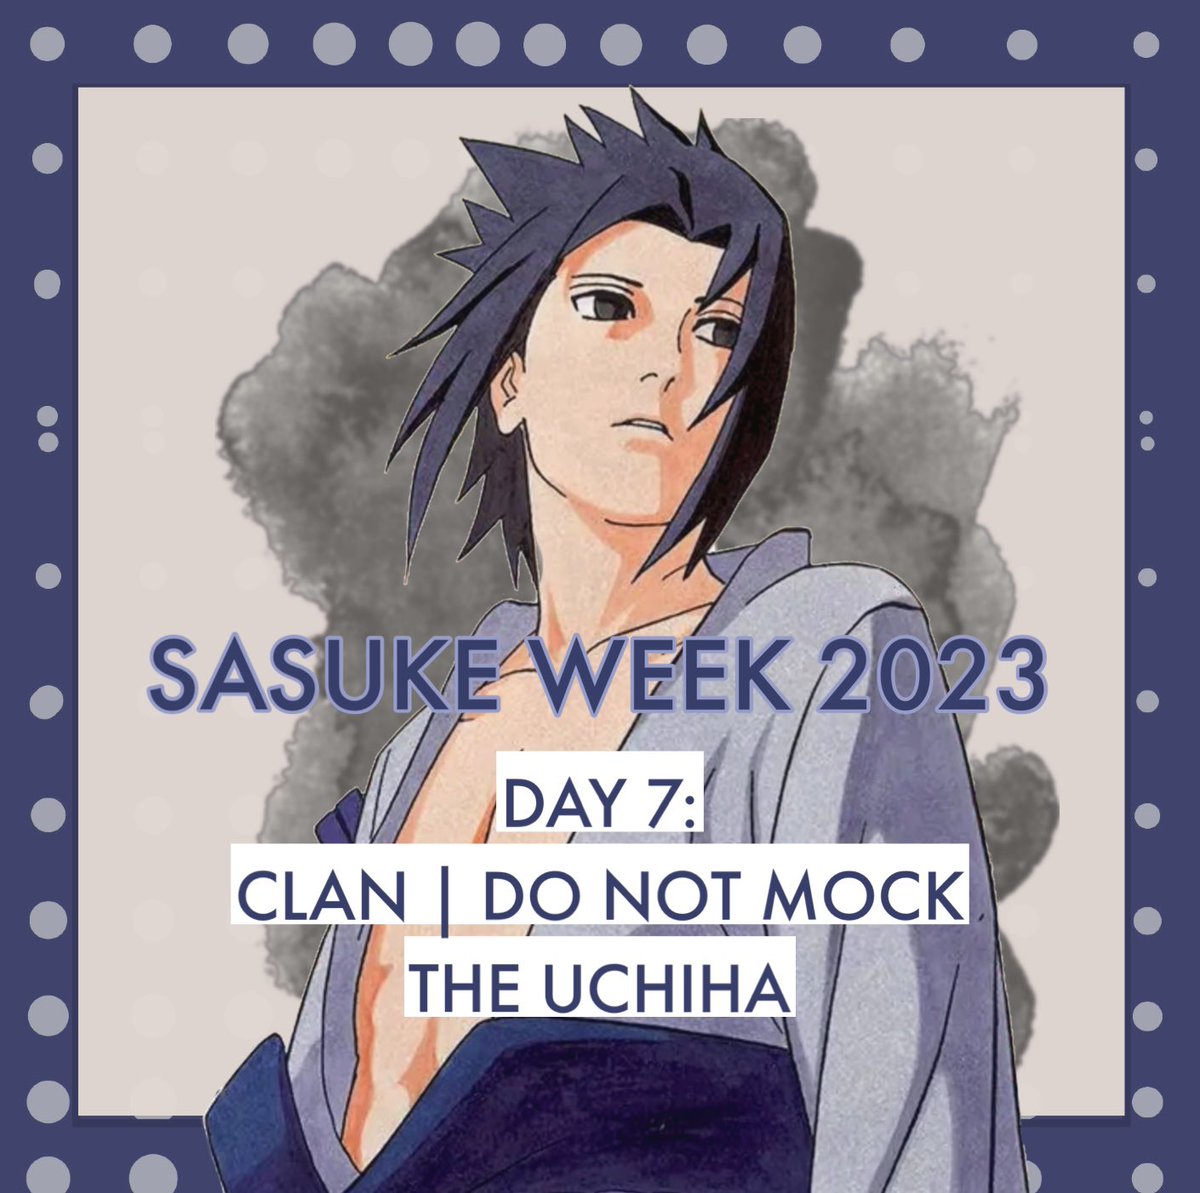 DAY 7 #SasukeWeek2023 Clan | Do Not Mock The Uchiha